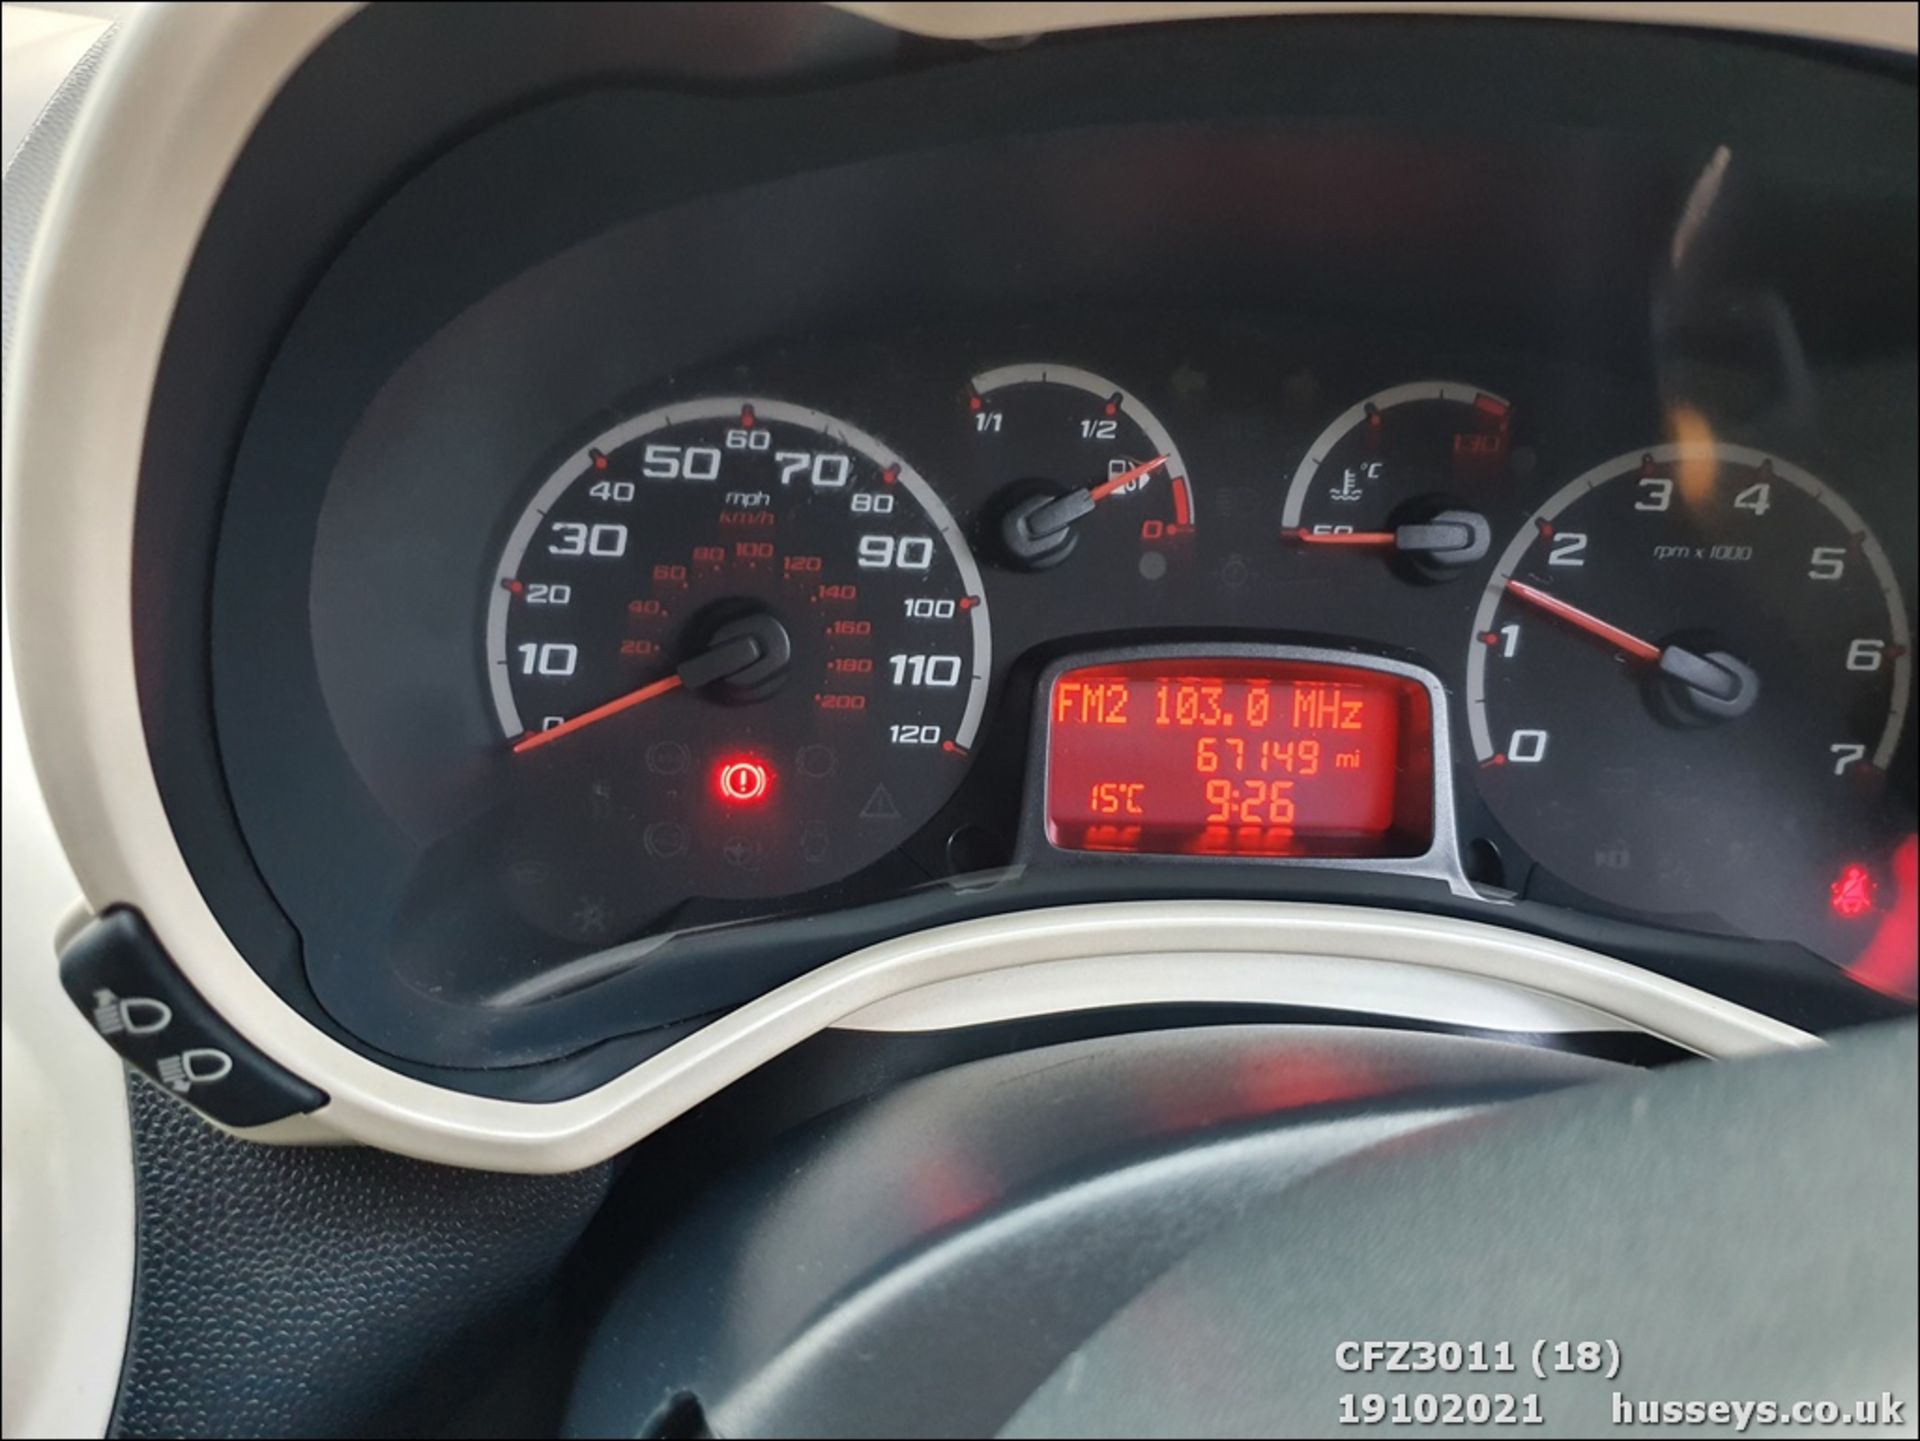 2010 FORD KA ZETEC TDCI - 1268cc 3dr Hatchback (Red, 67k) - Image 18 of 20